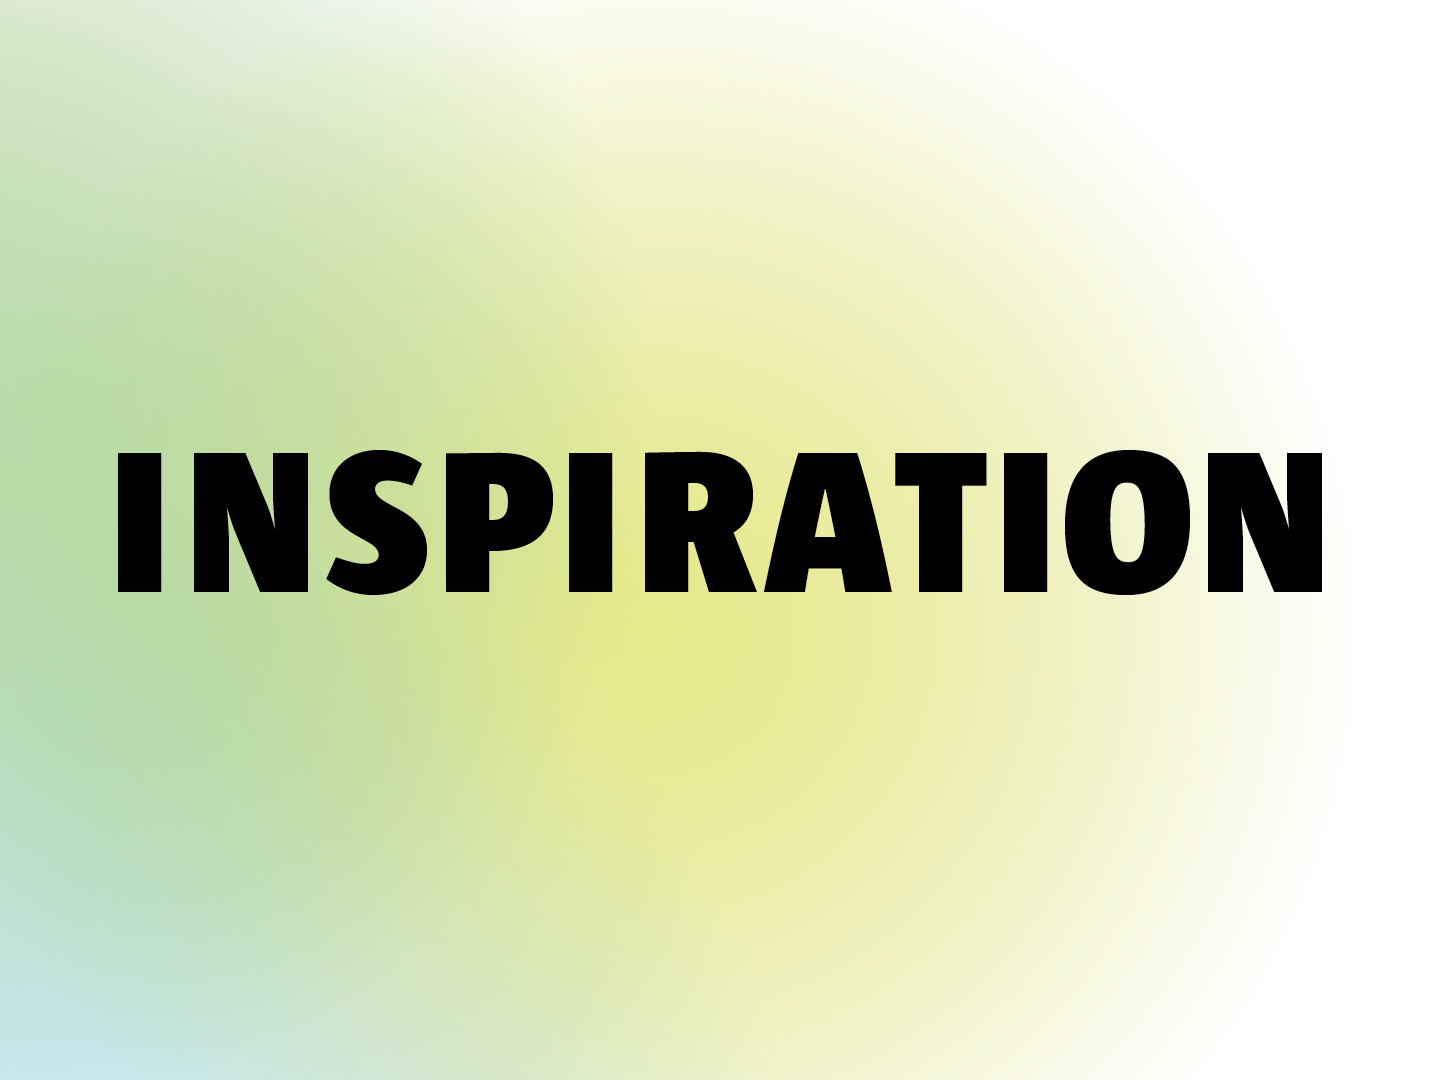 Schriftzug „INSPIRATION“ auf farbigem Hintergrund